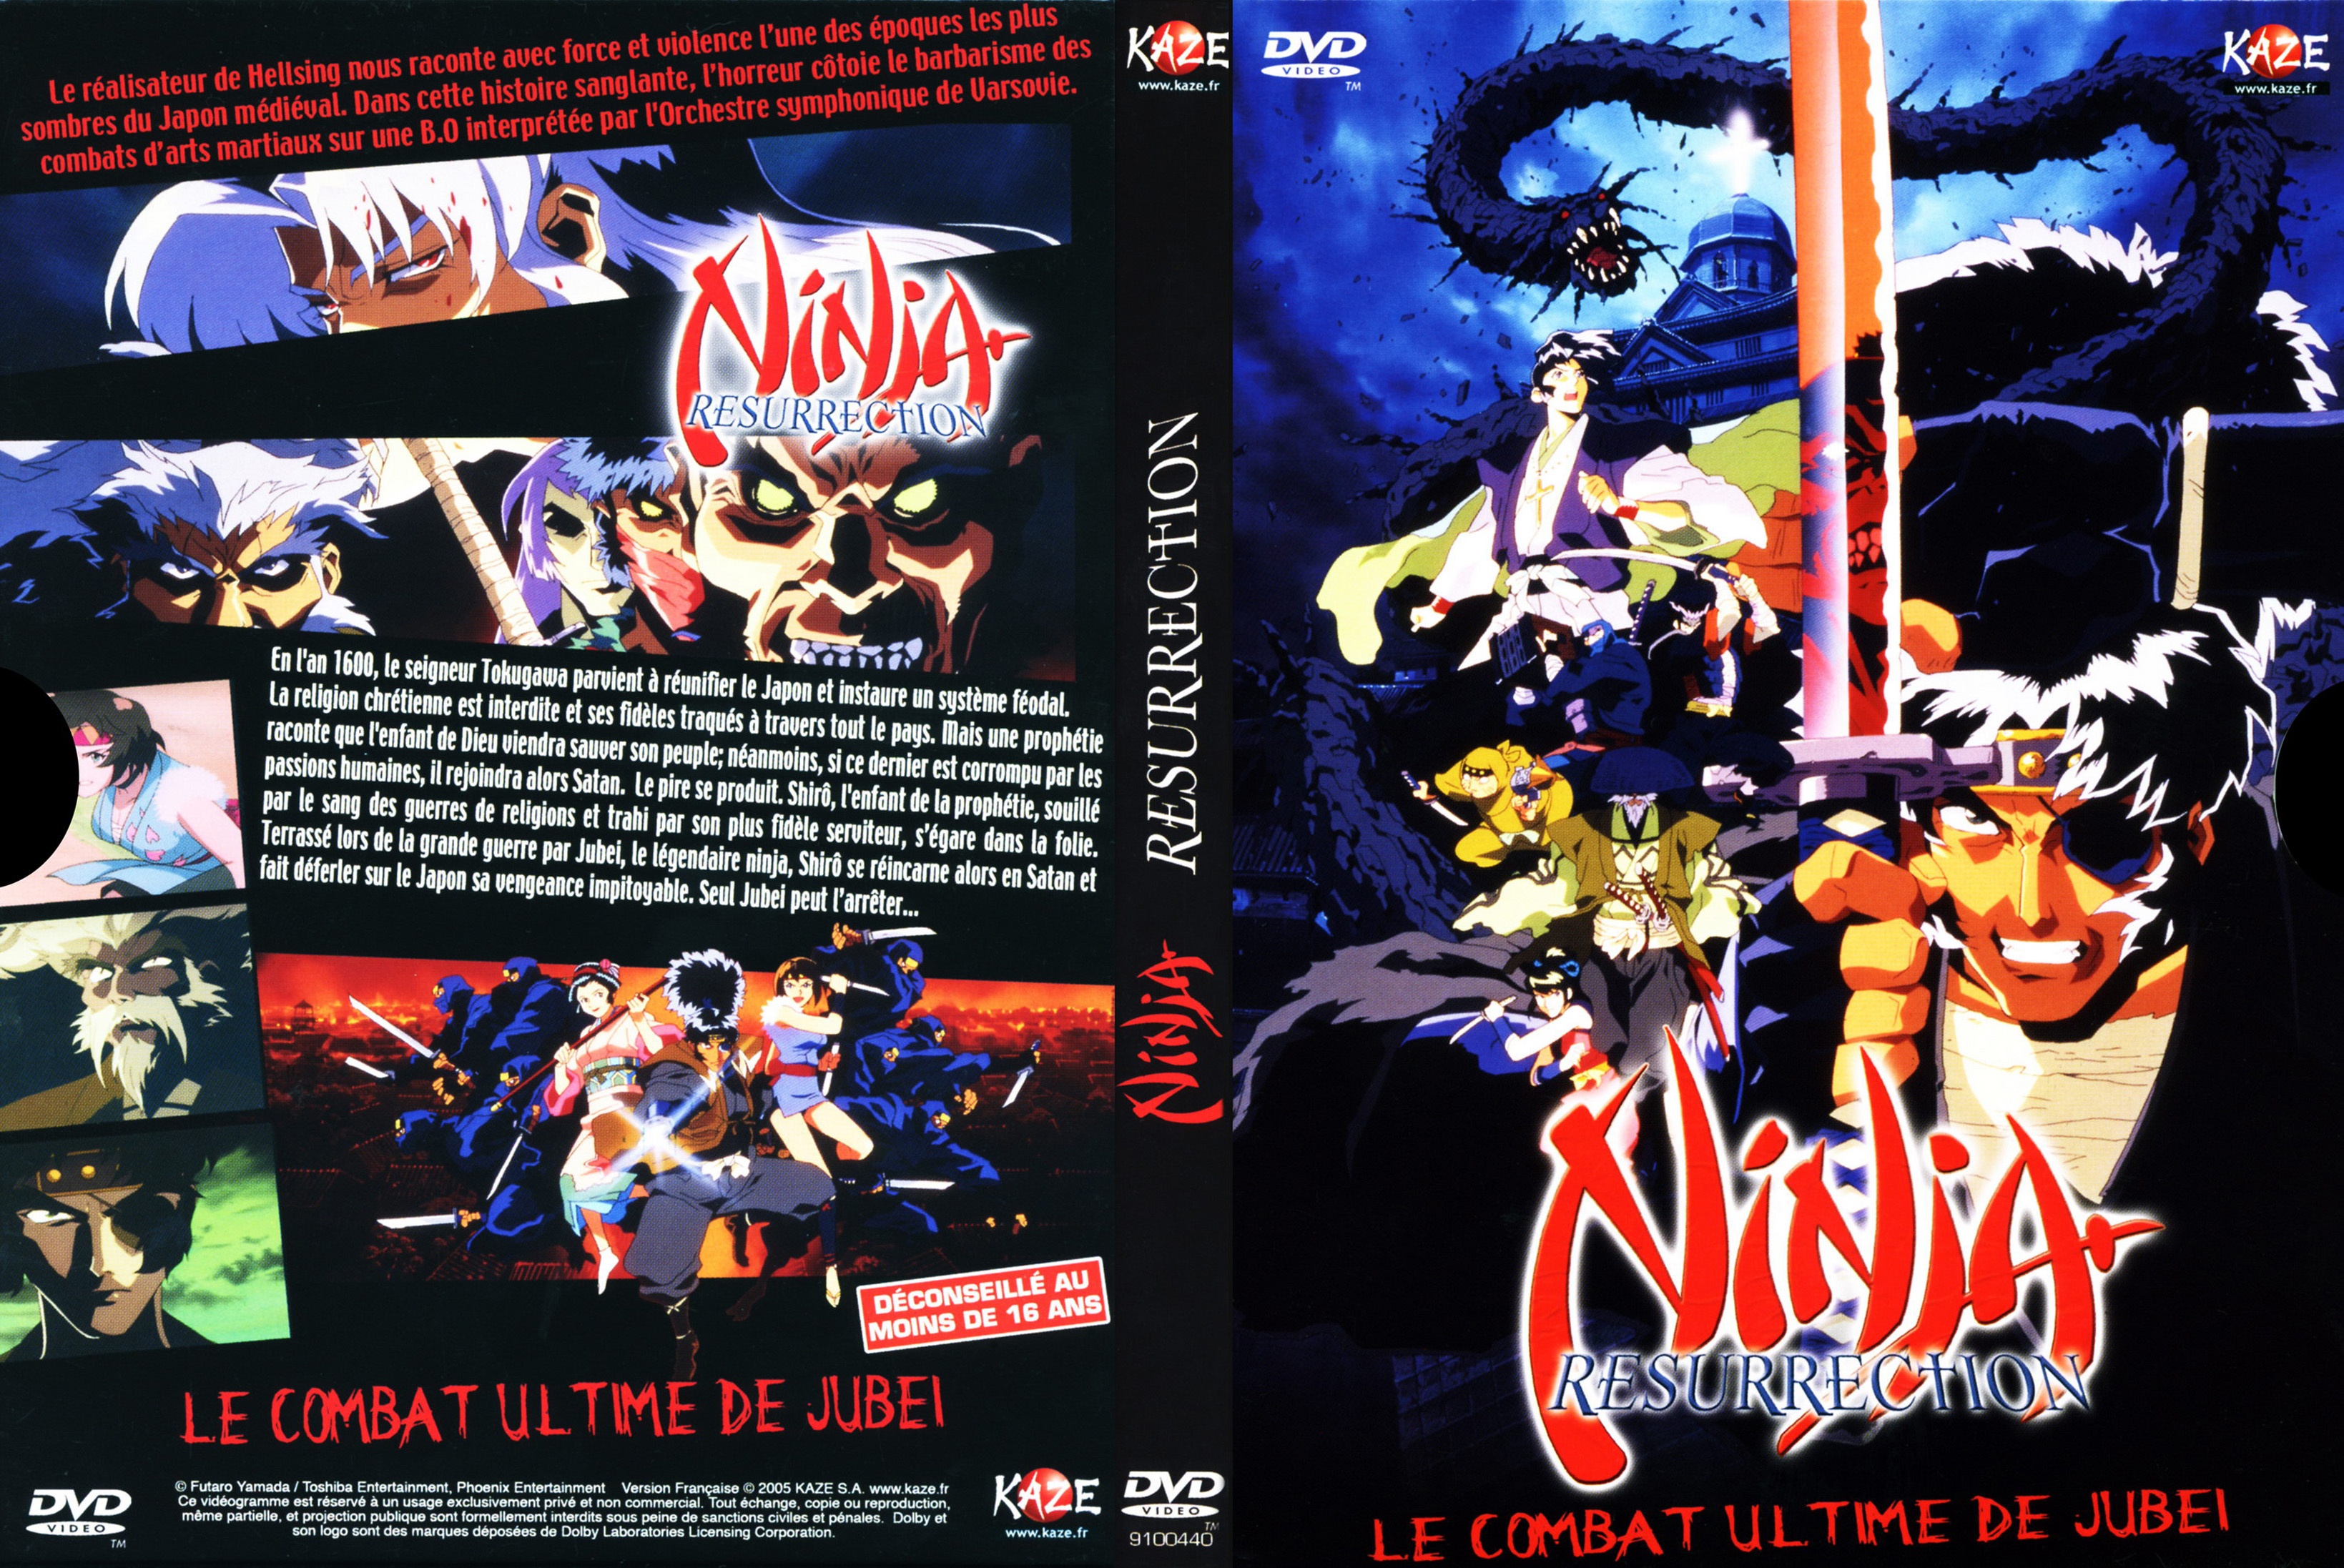 Jaquette DVD Ninja resurrection